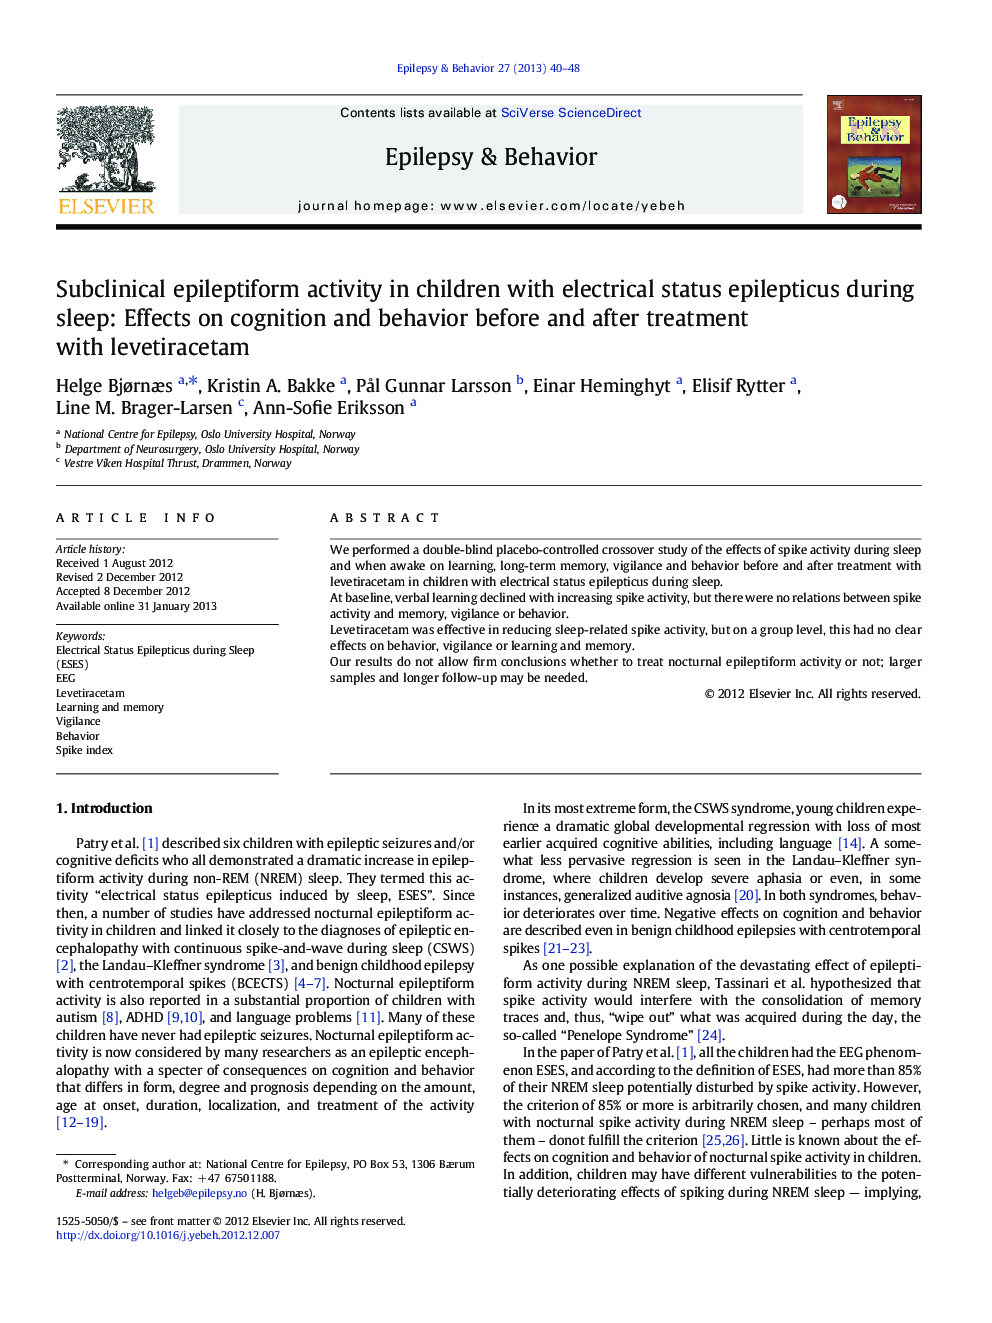 فعالیت اپیلتیمتریک زیربنینی در کودکان مبتلا به صرع الکلی وضعیت خواب در طول خواب: تأثیر در شناخت و رفتار قبل و بعد از درمان با لئوتیترازکتام 